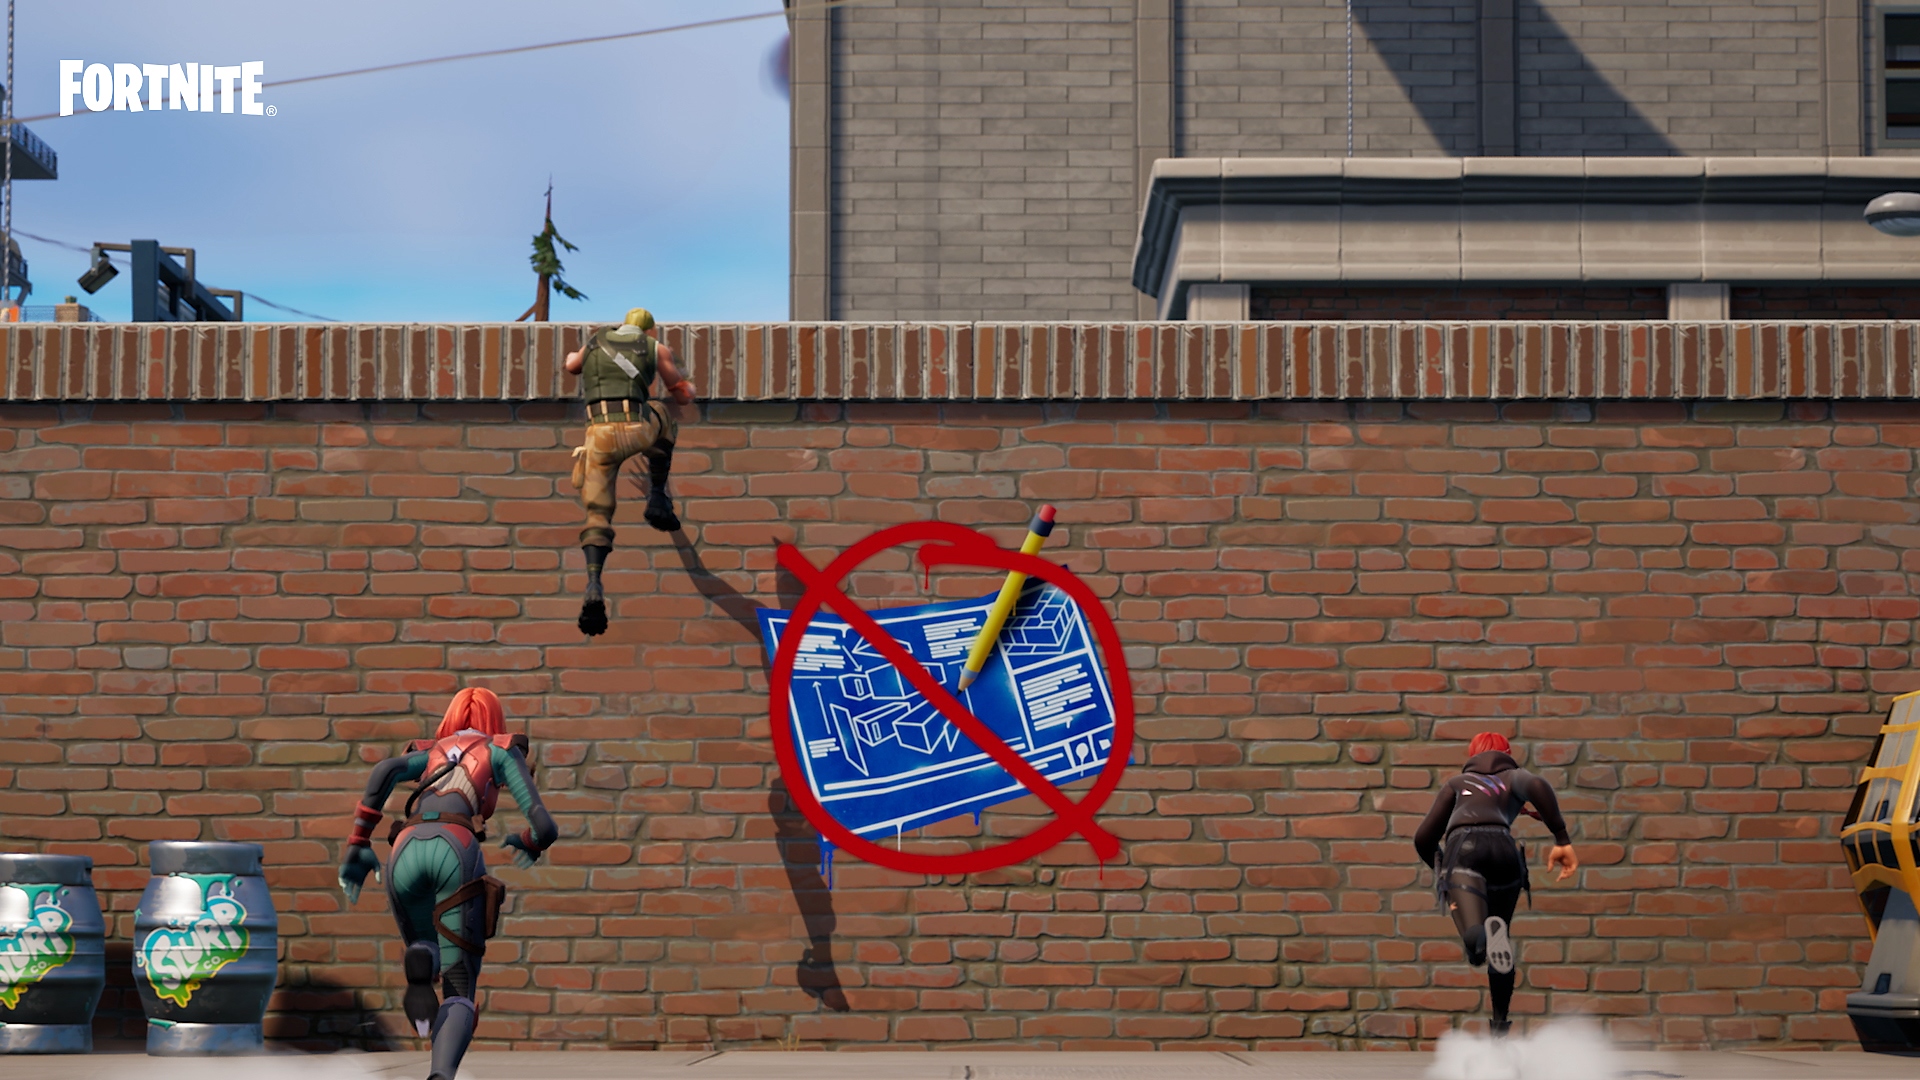 Fortnite Zero Build Mode - personages die een muur beklimmen